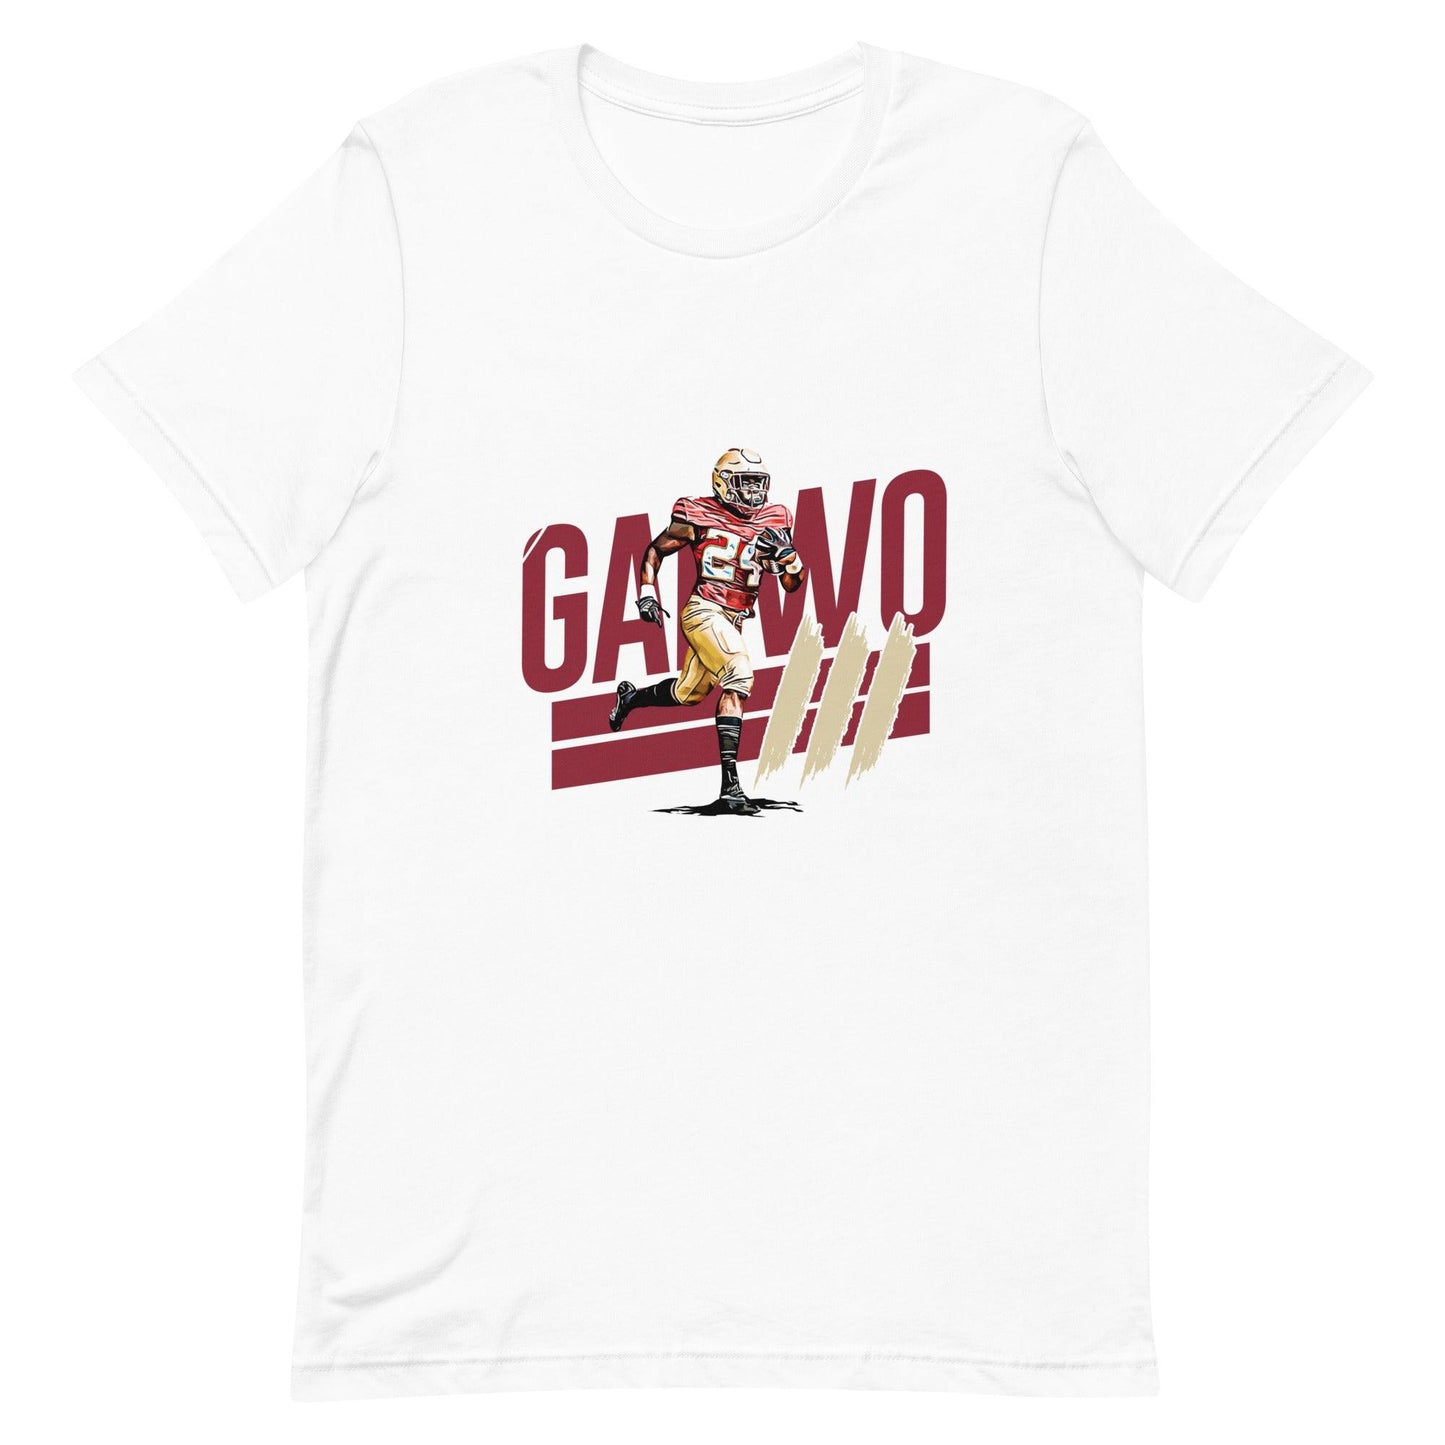 Patrick Garwo III “essential“ t-shirt - Fan Arch